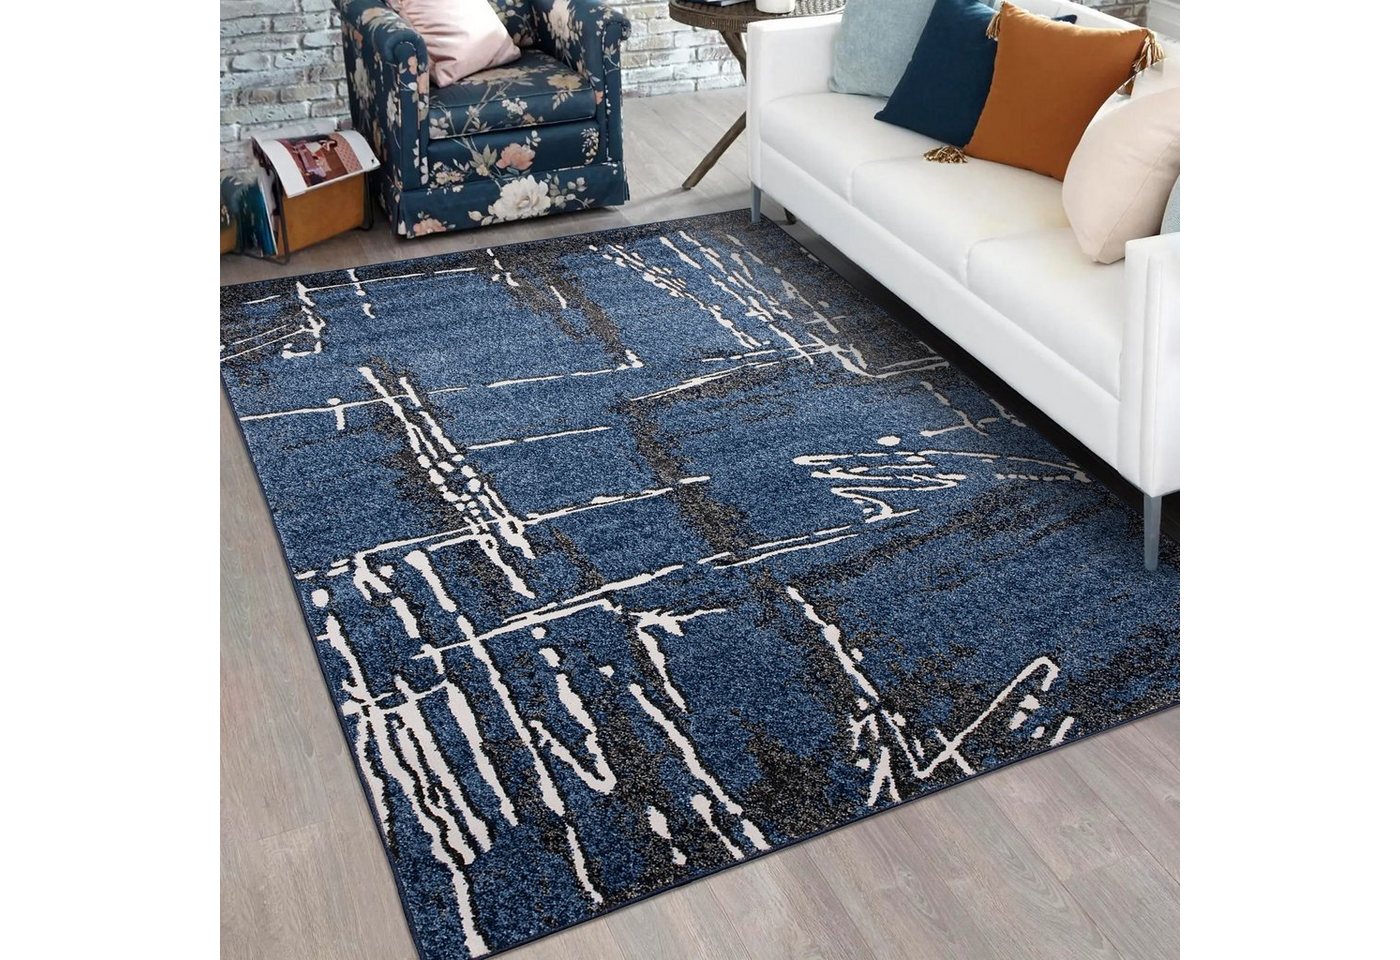 Designteppich Modern Teppich für Wohnzimmer - Abstrakt - Blau Marineblau, Mazovia, 80 x 150 cm, Abstrakt, Modern, Höhe 11 mm, Kurzflor - niedrige Florhöhe, Weich, Pflegeleicht von Mazovia